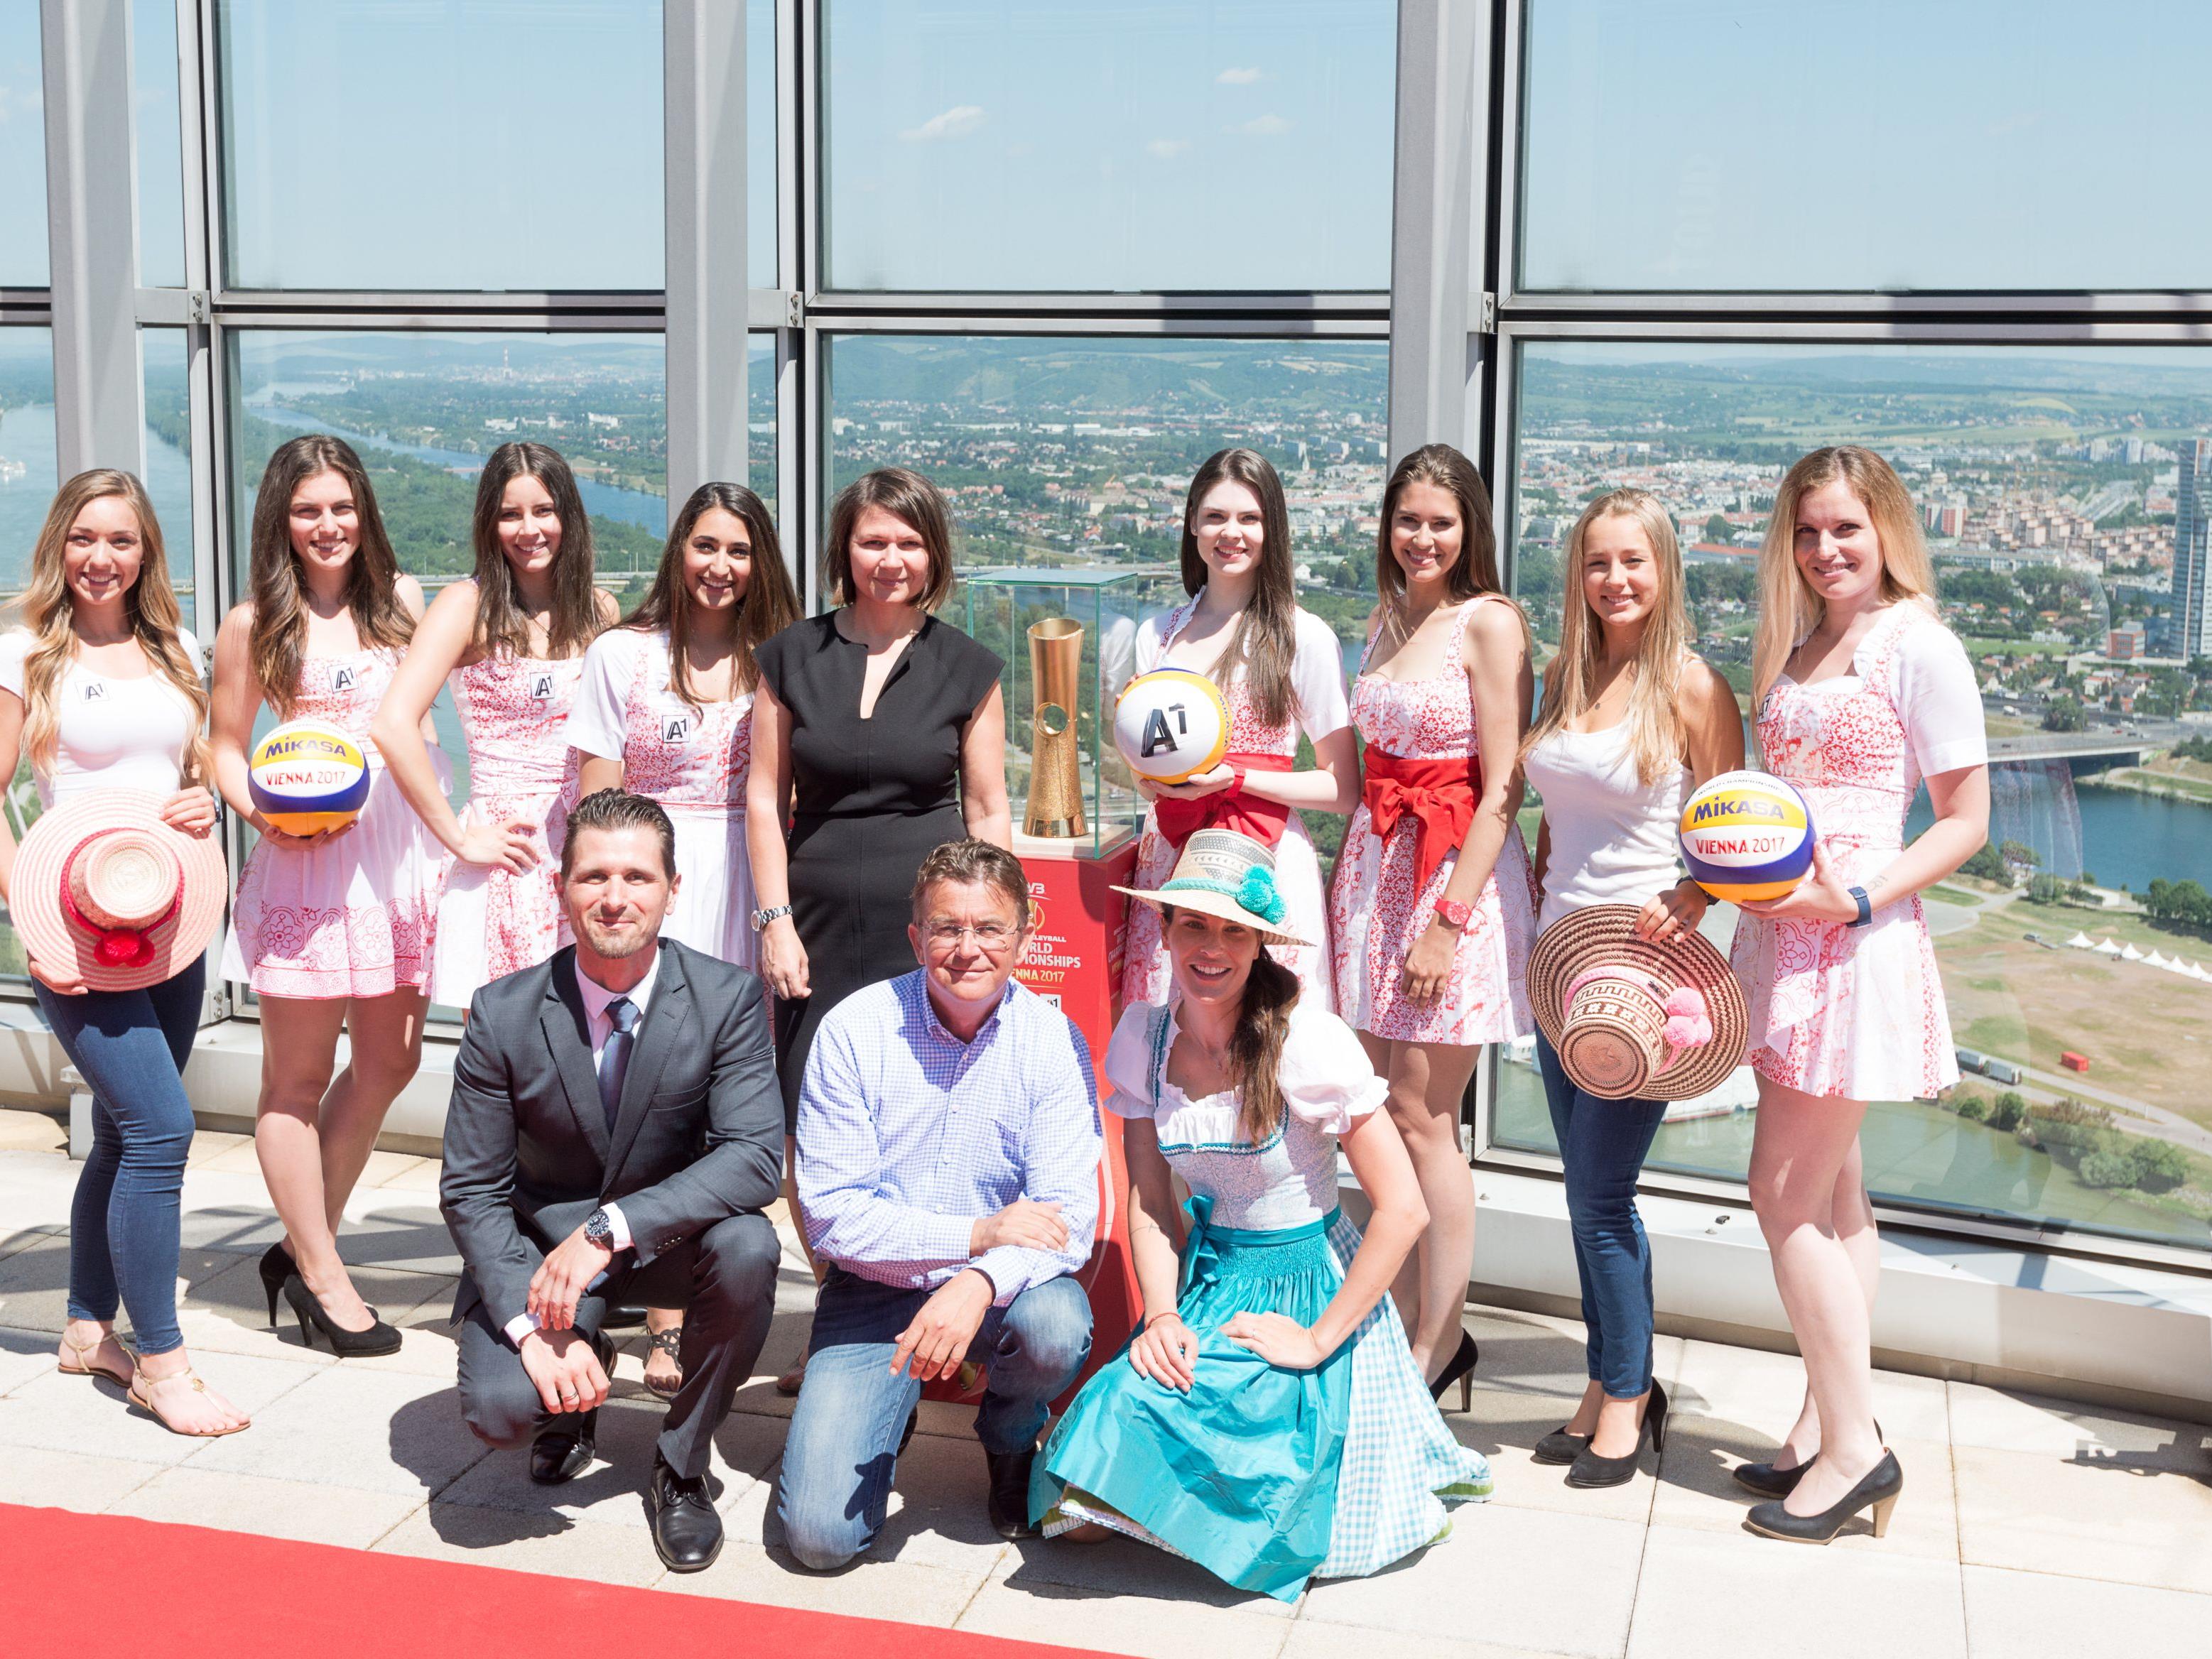 Die Beach Girls für die Beach-Volleyball-WM auf der Donauinsel sind auserkoren.